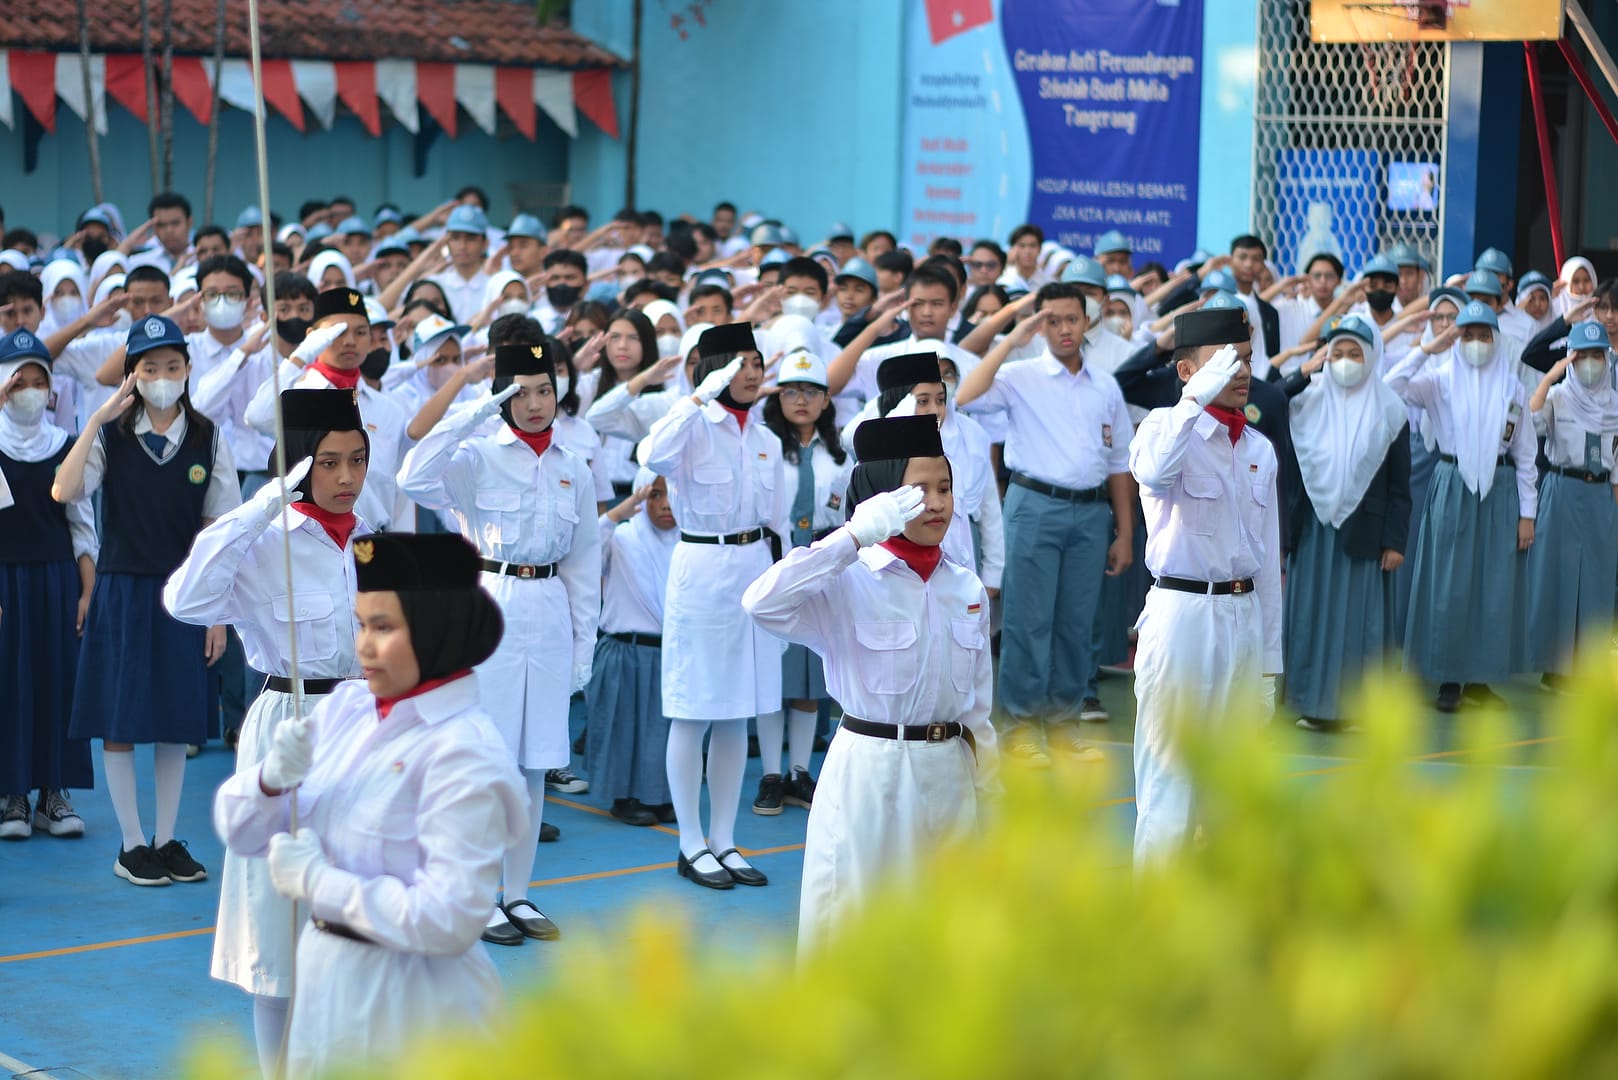 Peringatan HUT ke-78 RI di Sekolah Budi Mulia Tangerang Berjalan Khidmat dan Lancar